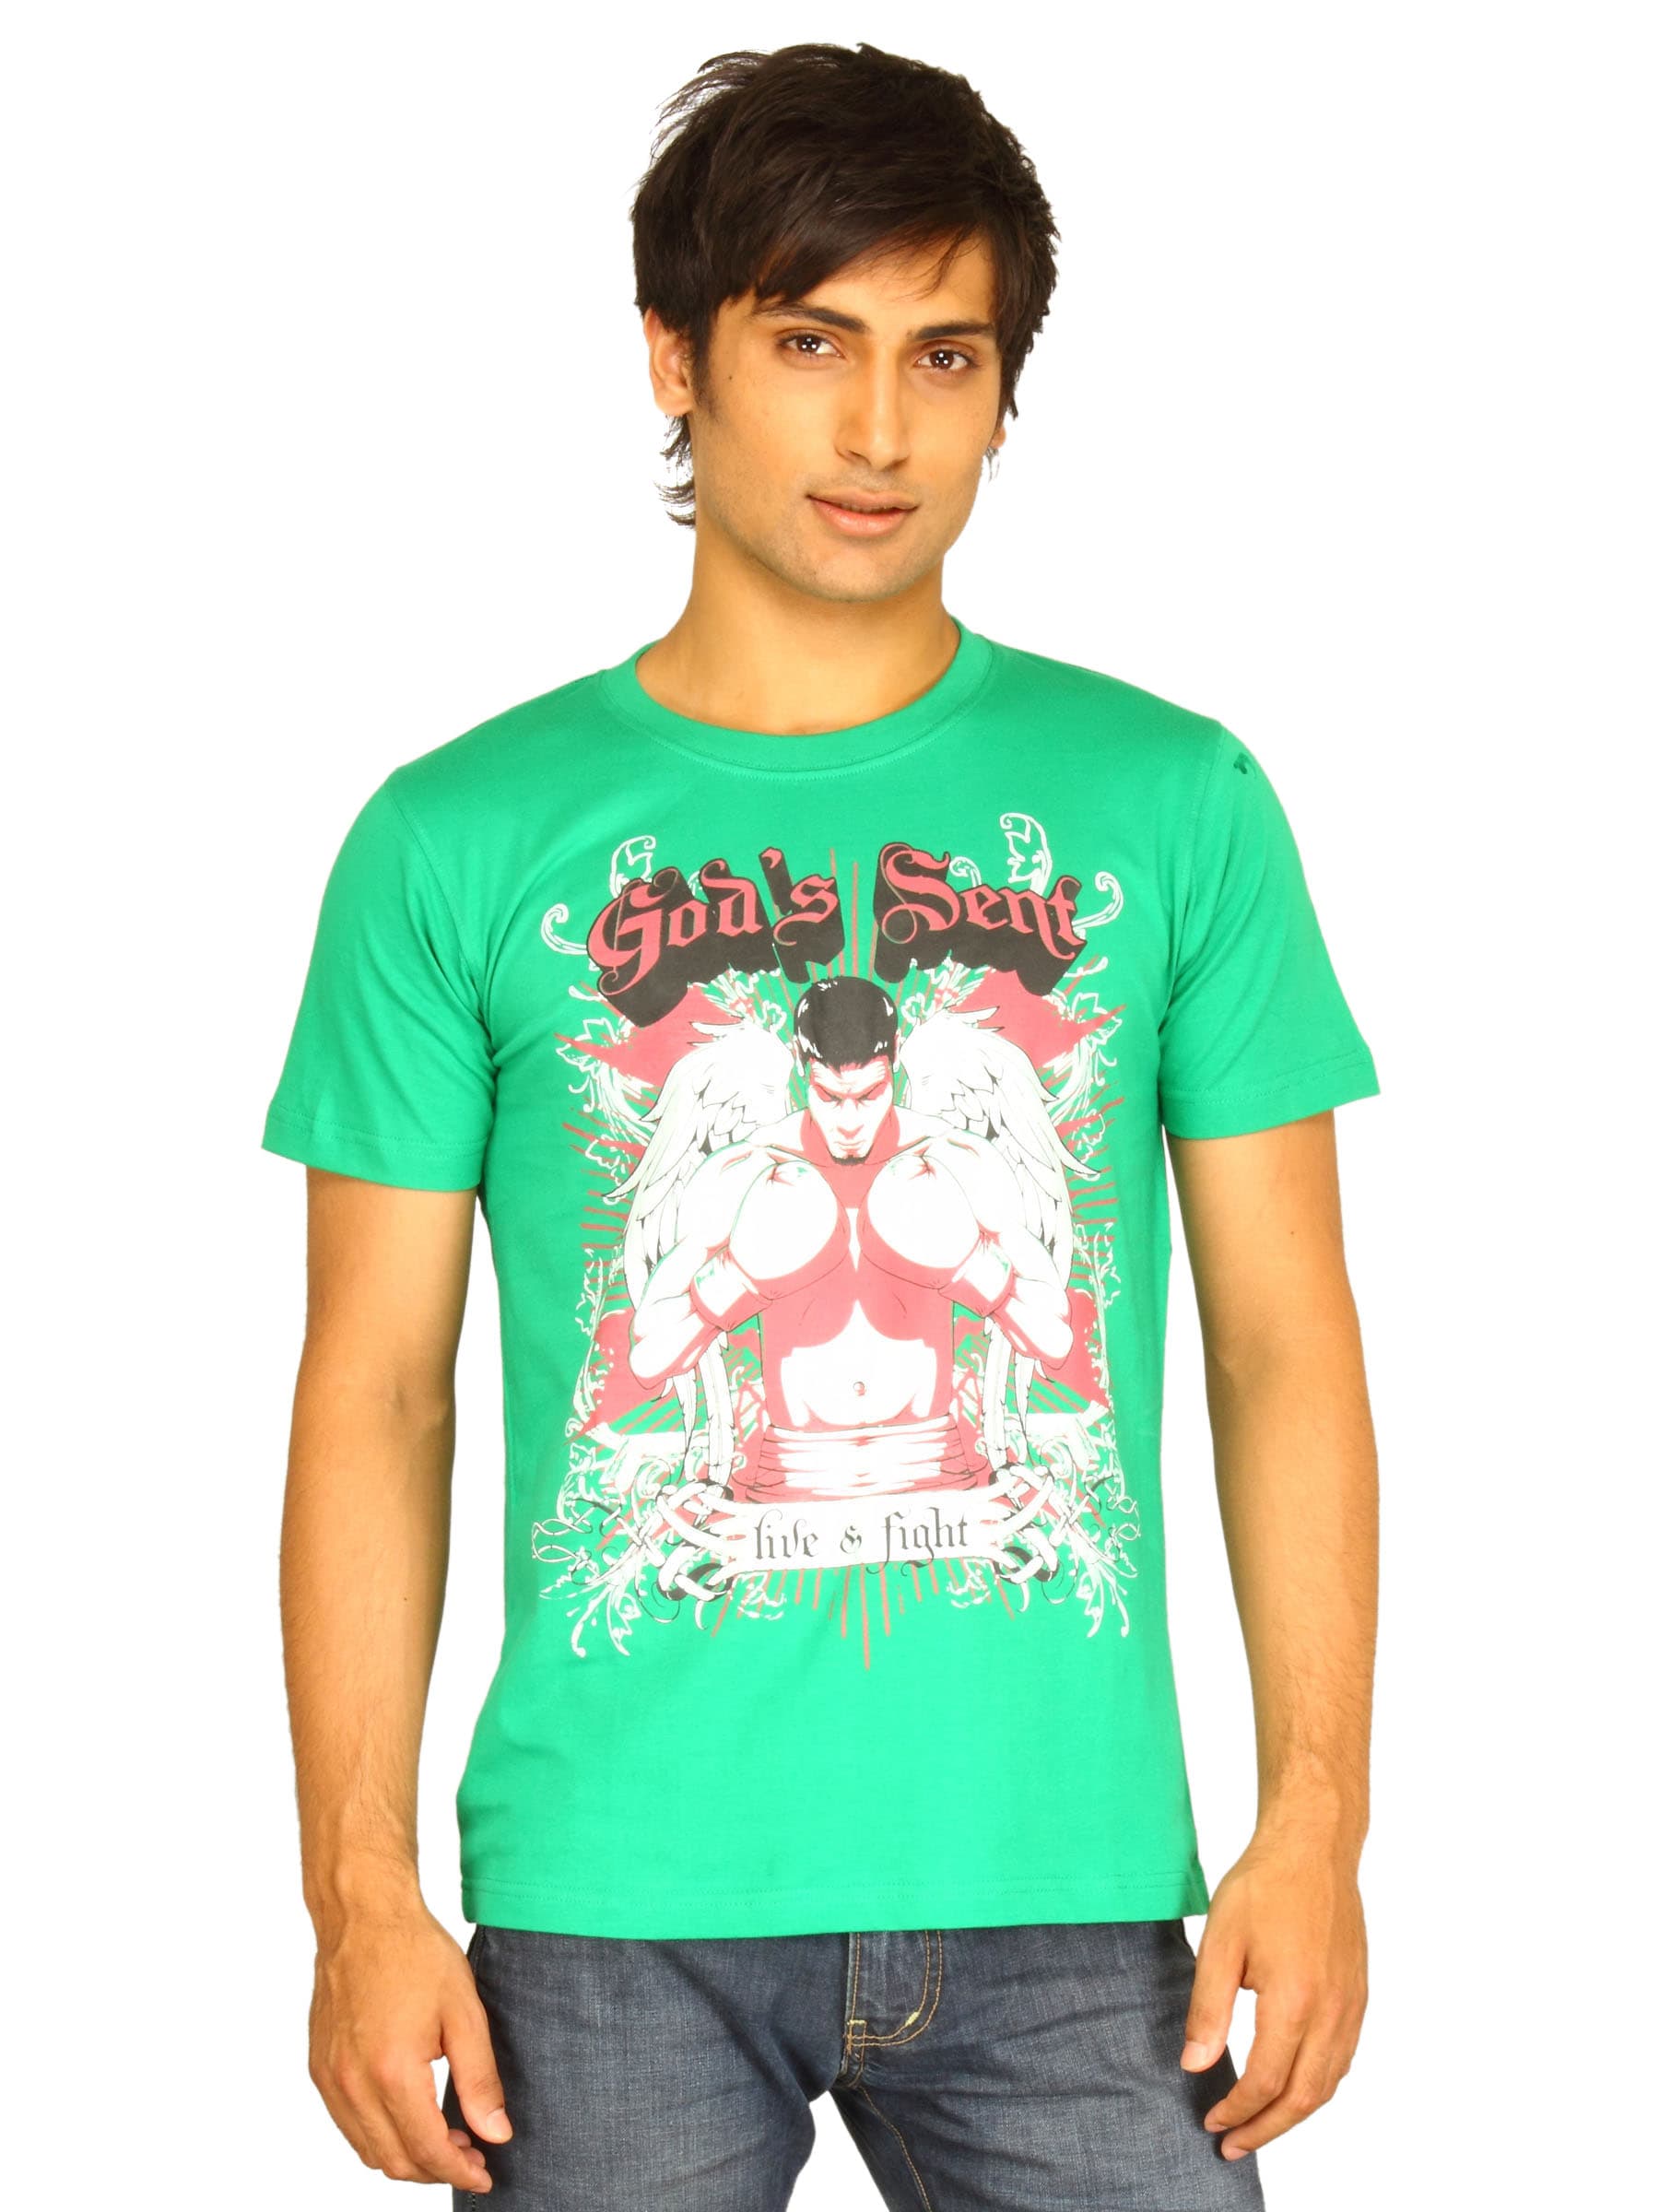 Guerrilla Men's God's Sent Green T-shirt